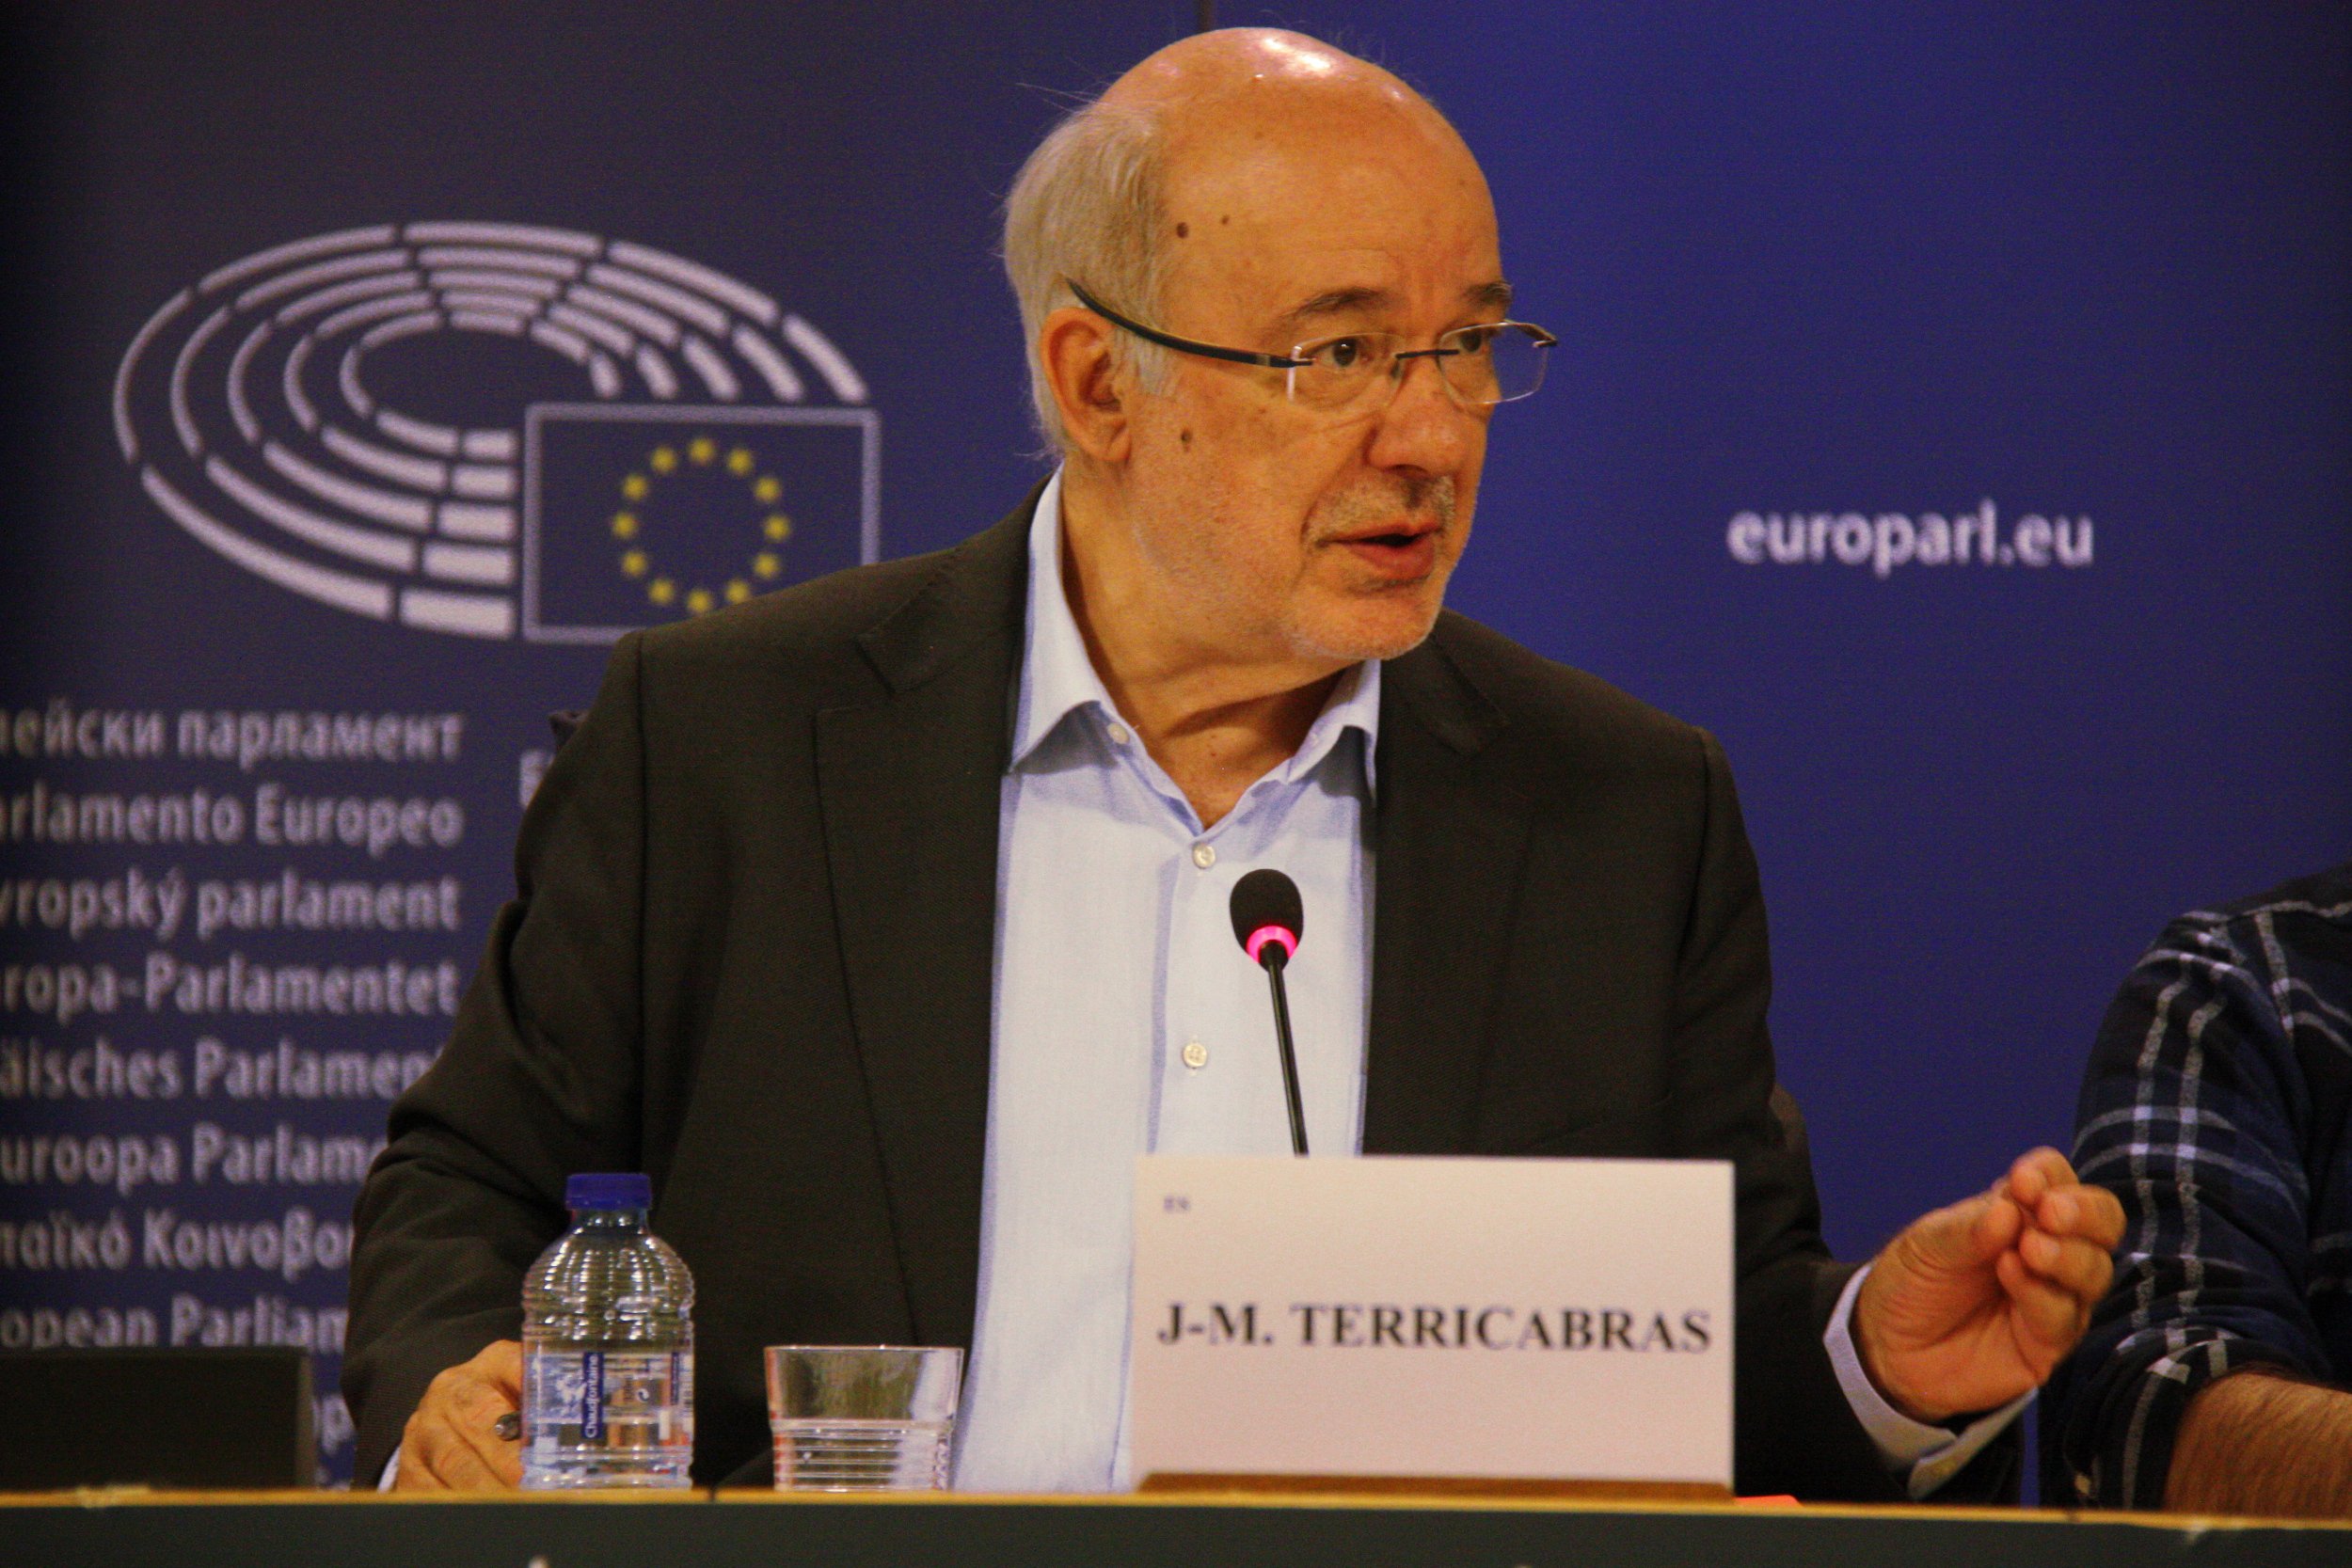 Terricabras reclama a Juncker "mediació" per la independència